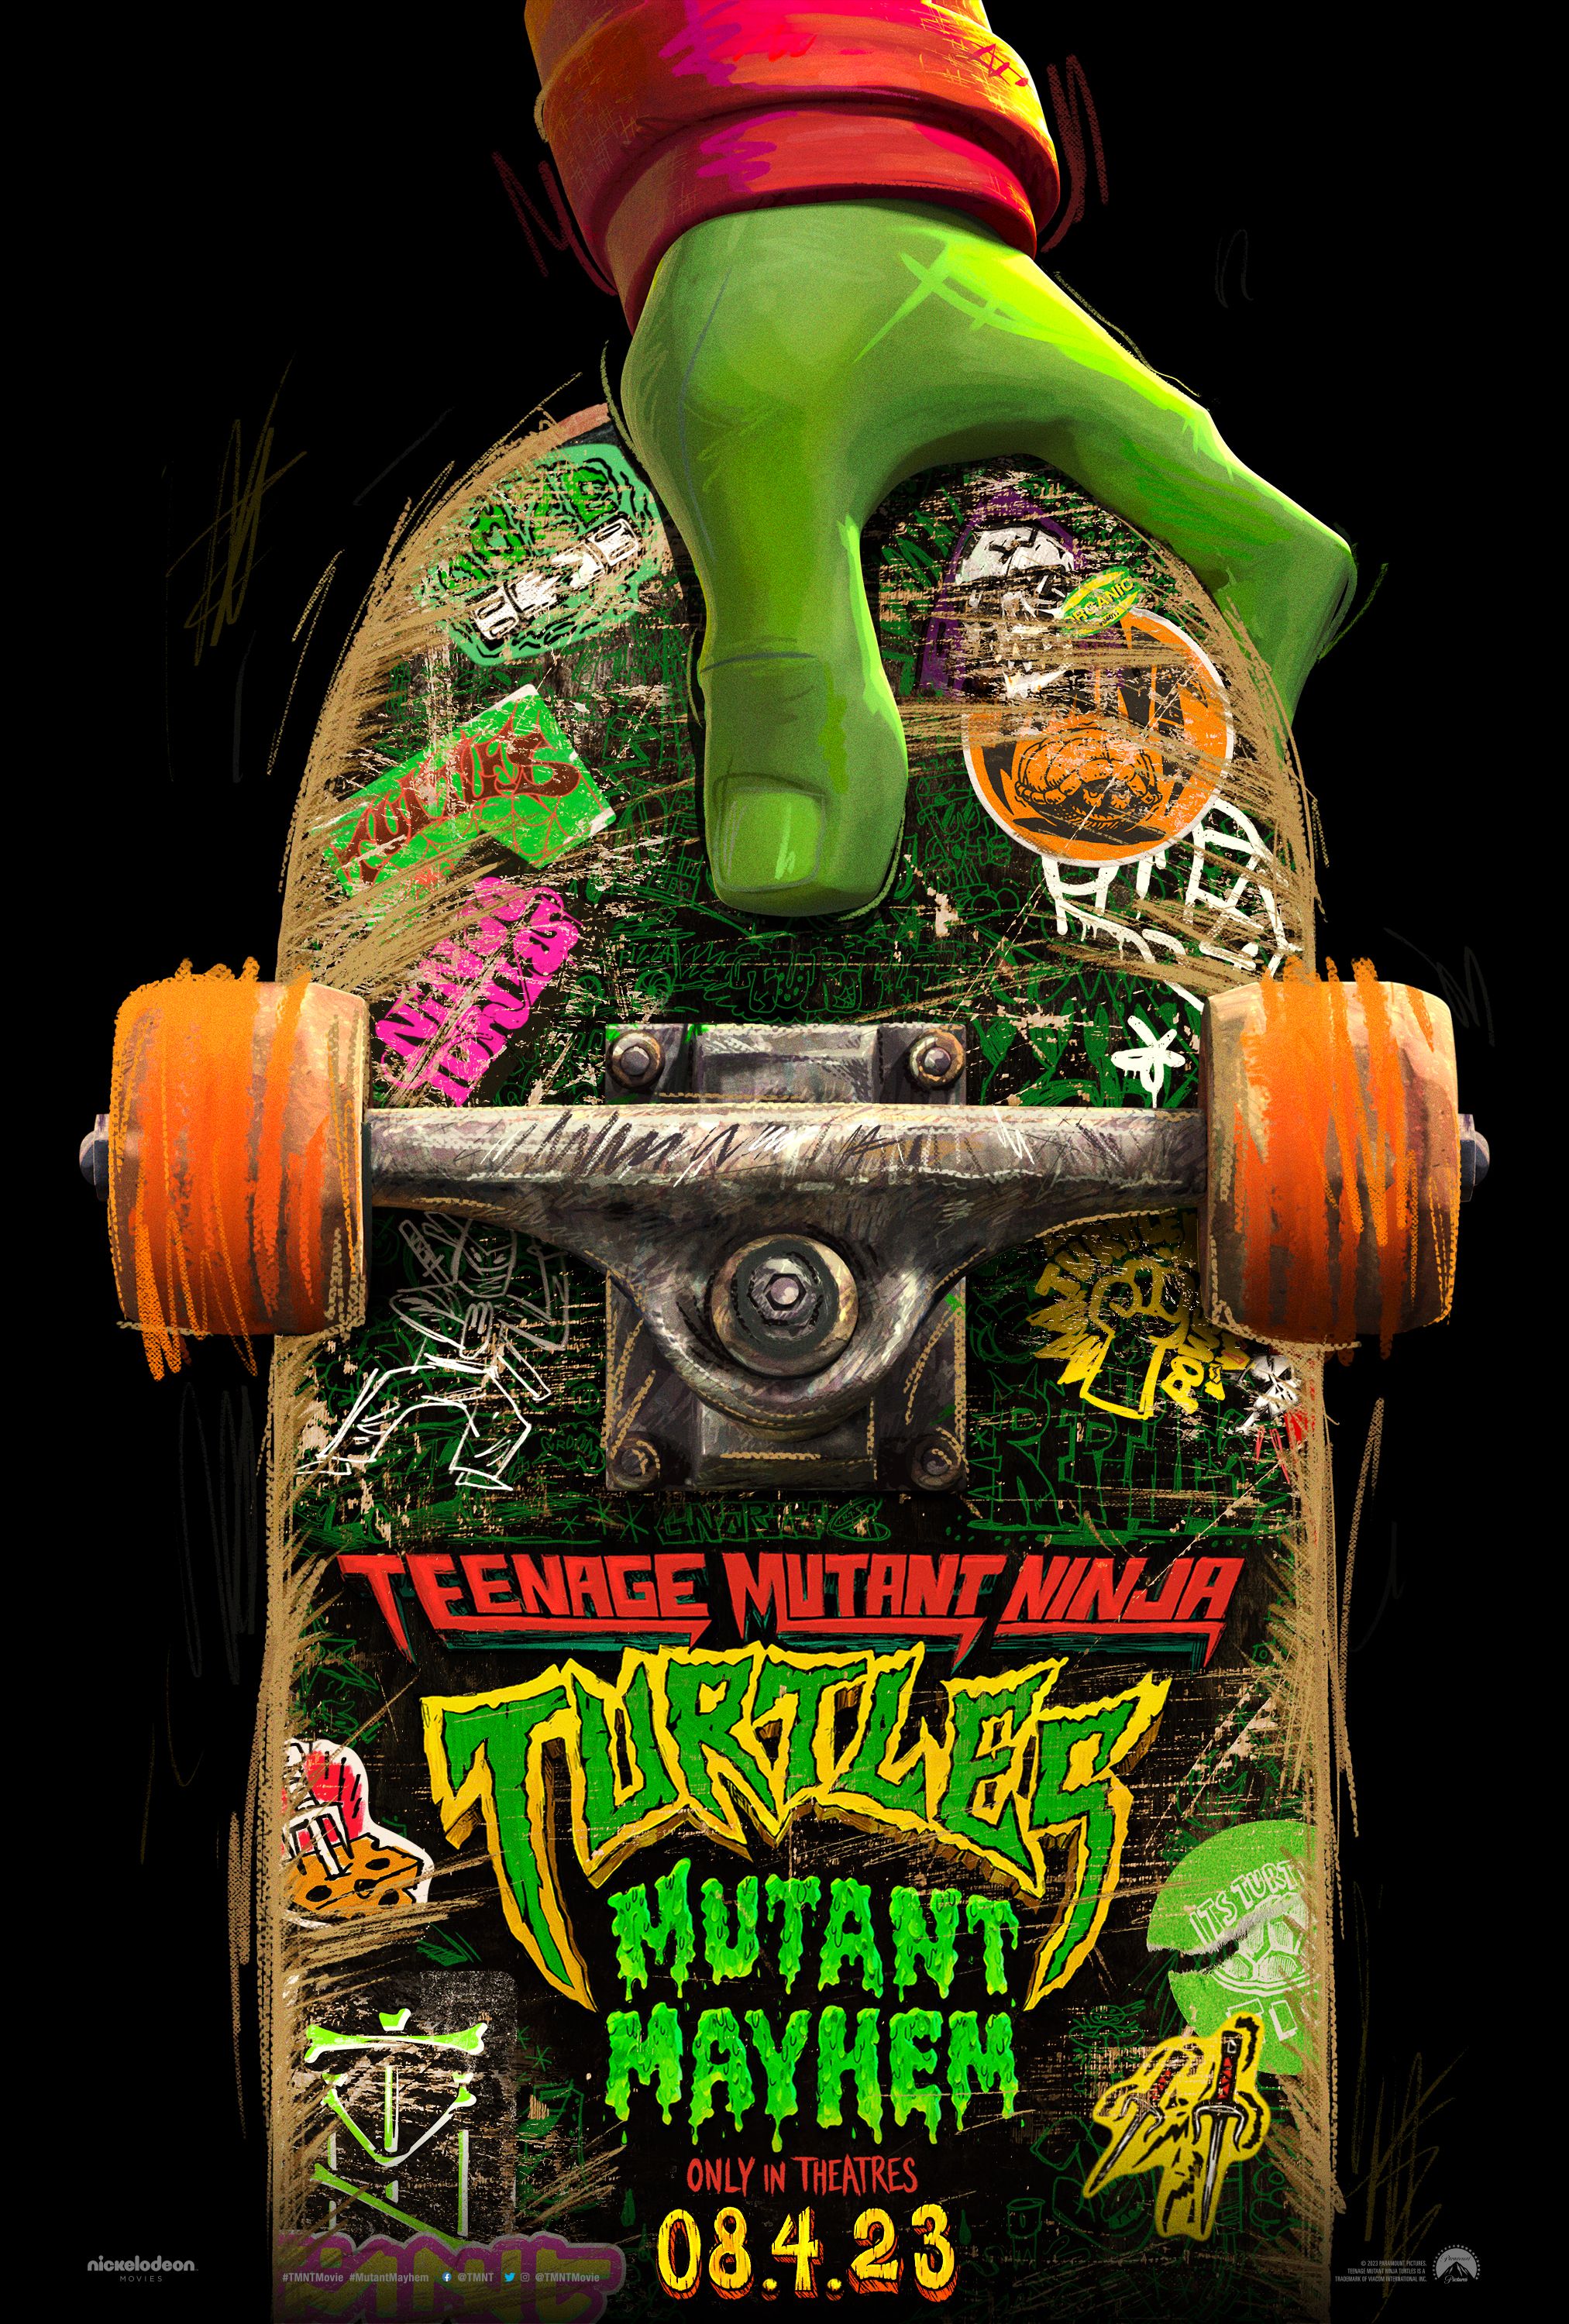 Teenage Mutant Ninja Turtles Mutant Chaos Poster